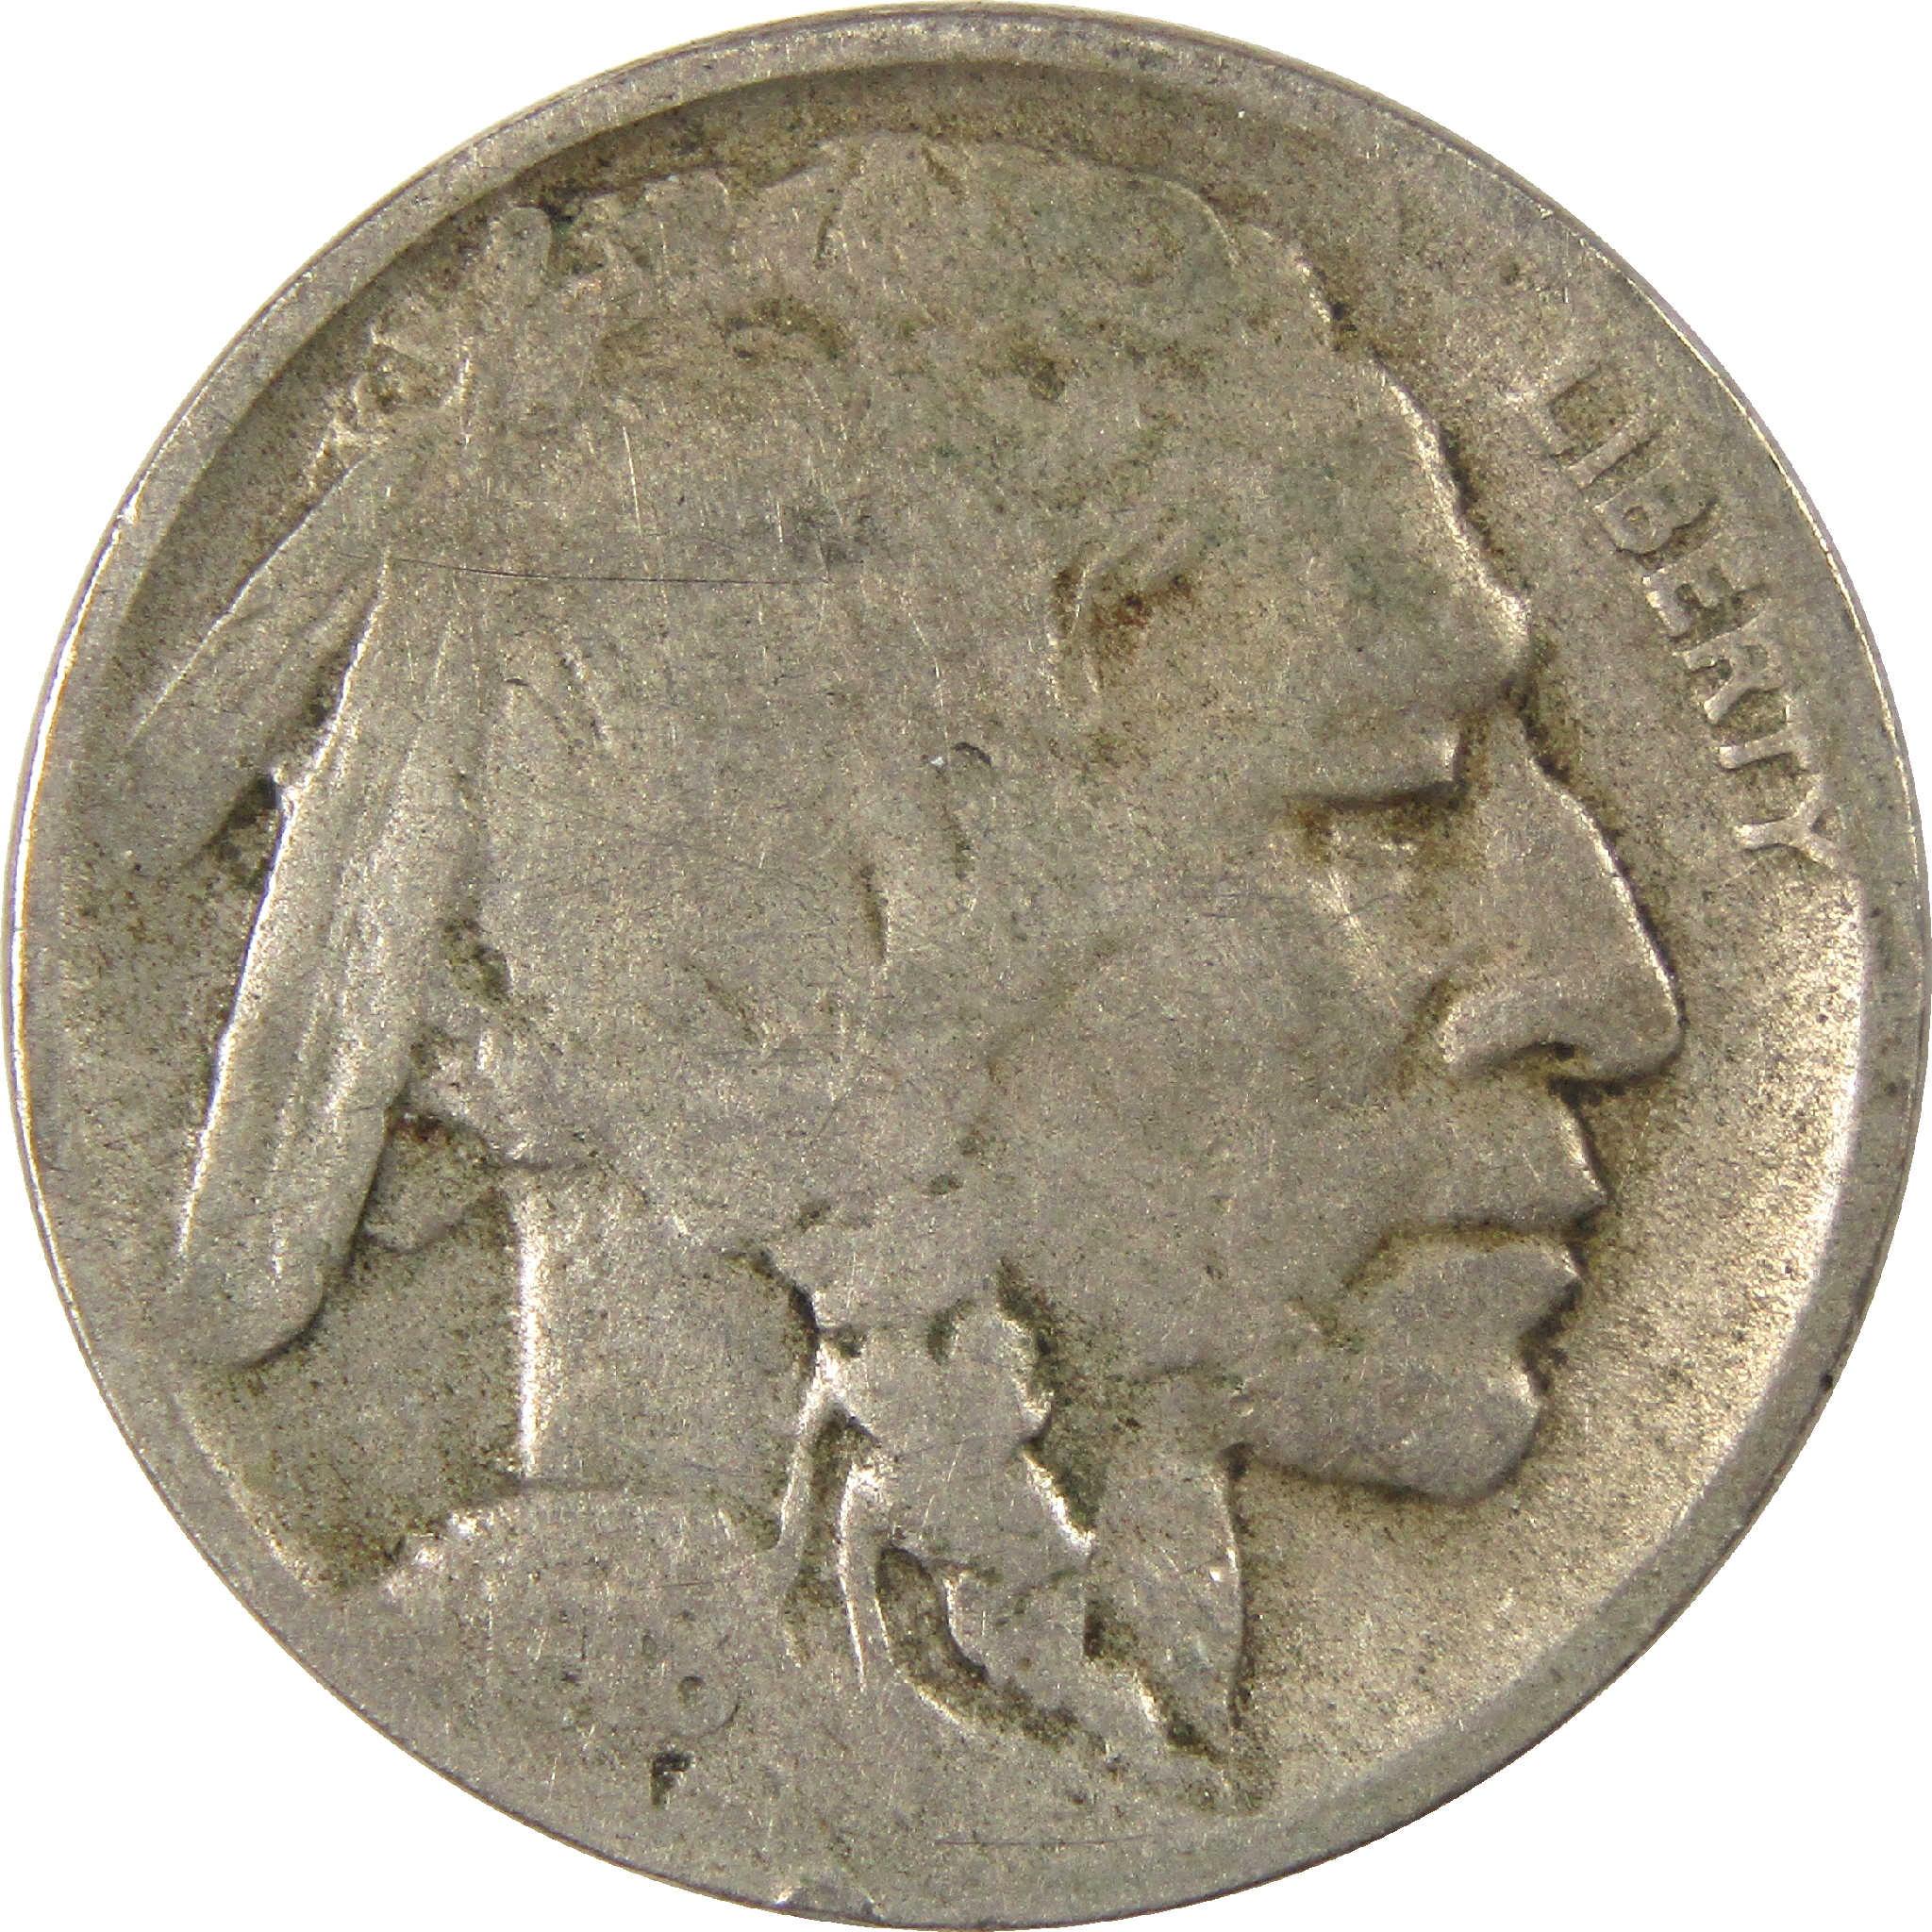 1918 D Indian Head Buffalo Nickel VG Very Good 5c Coin SKU:I11523